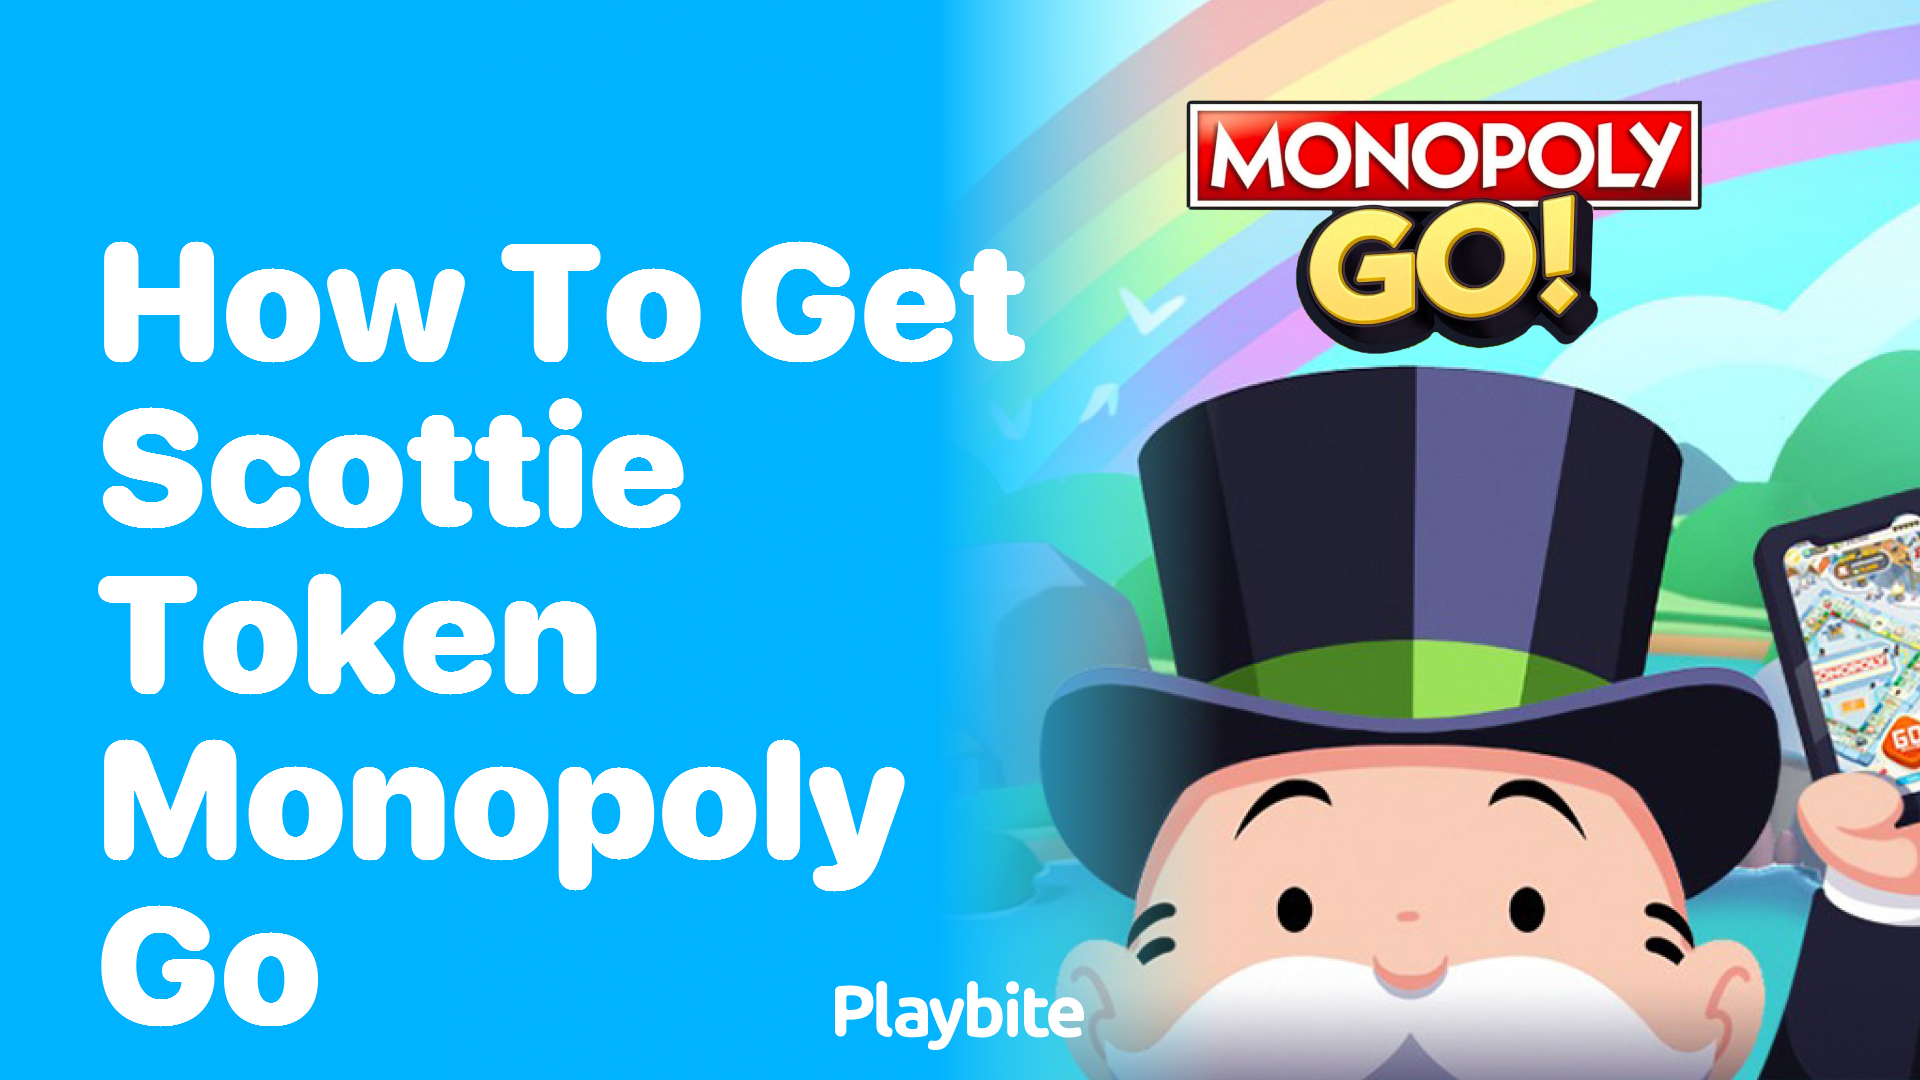 How to Get Scottie Token in Monopoly Go